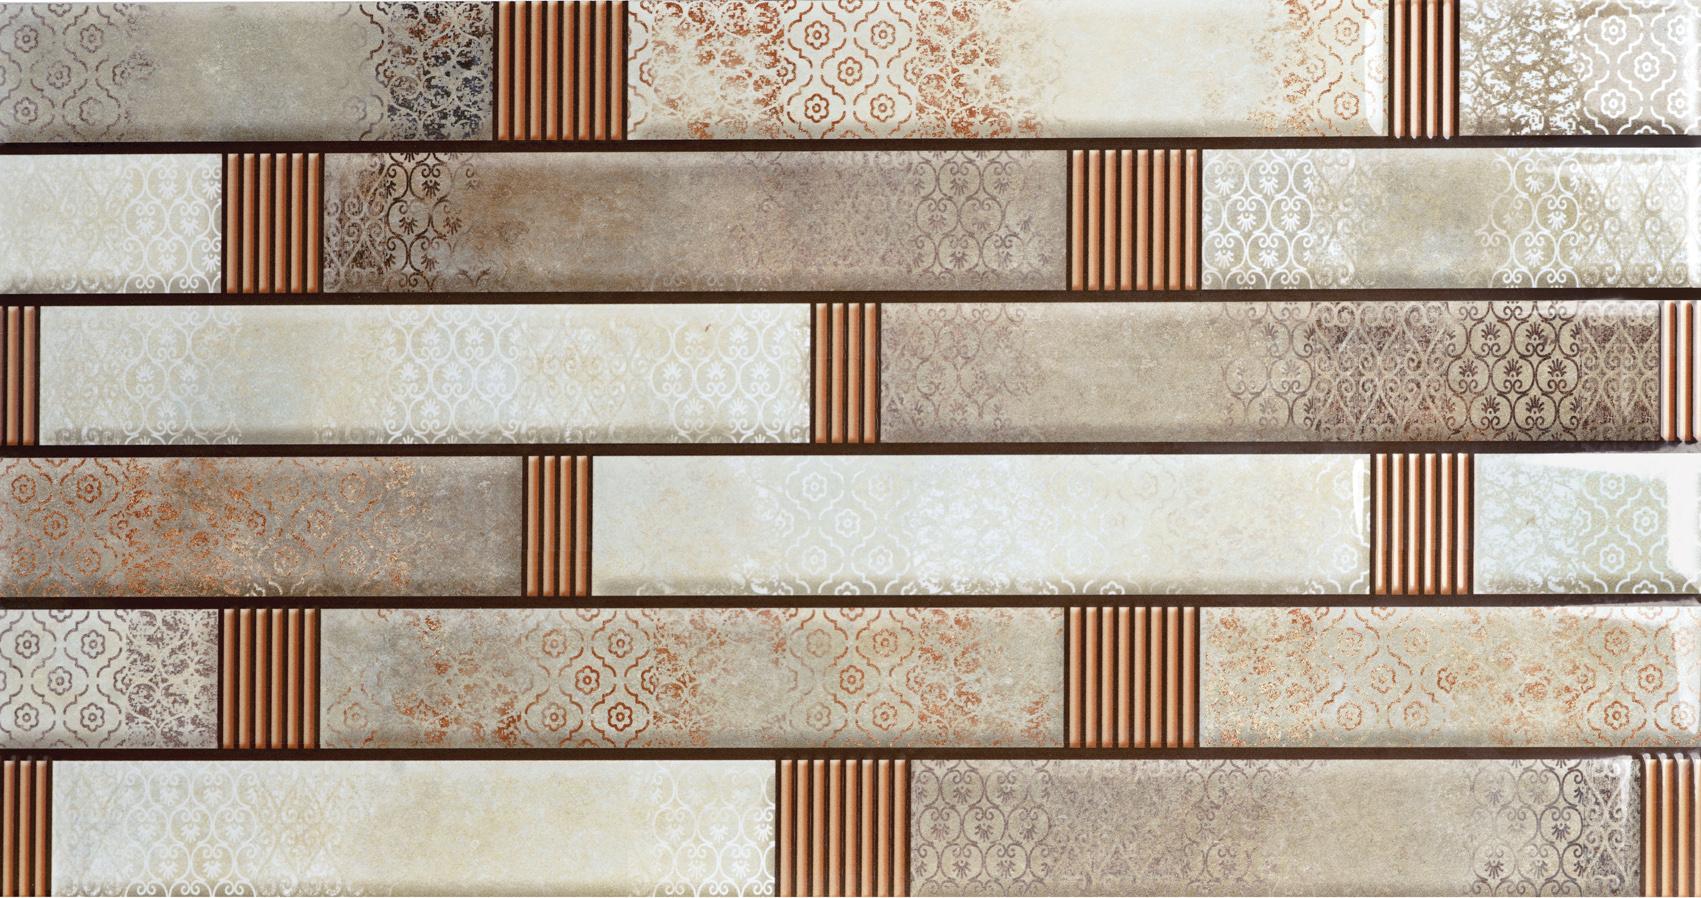 Sandune Tiles for Bathroom Tiles, Kitchen Tiles, Accent Tiles